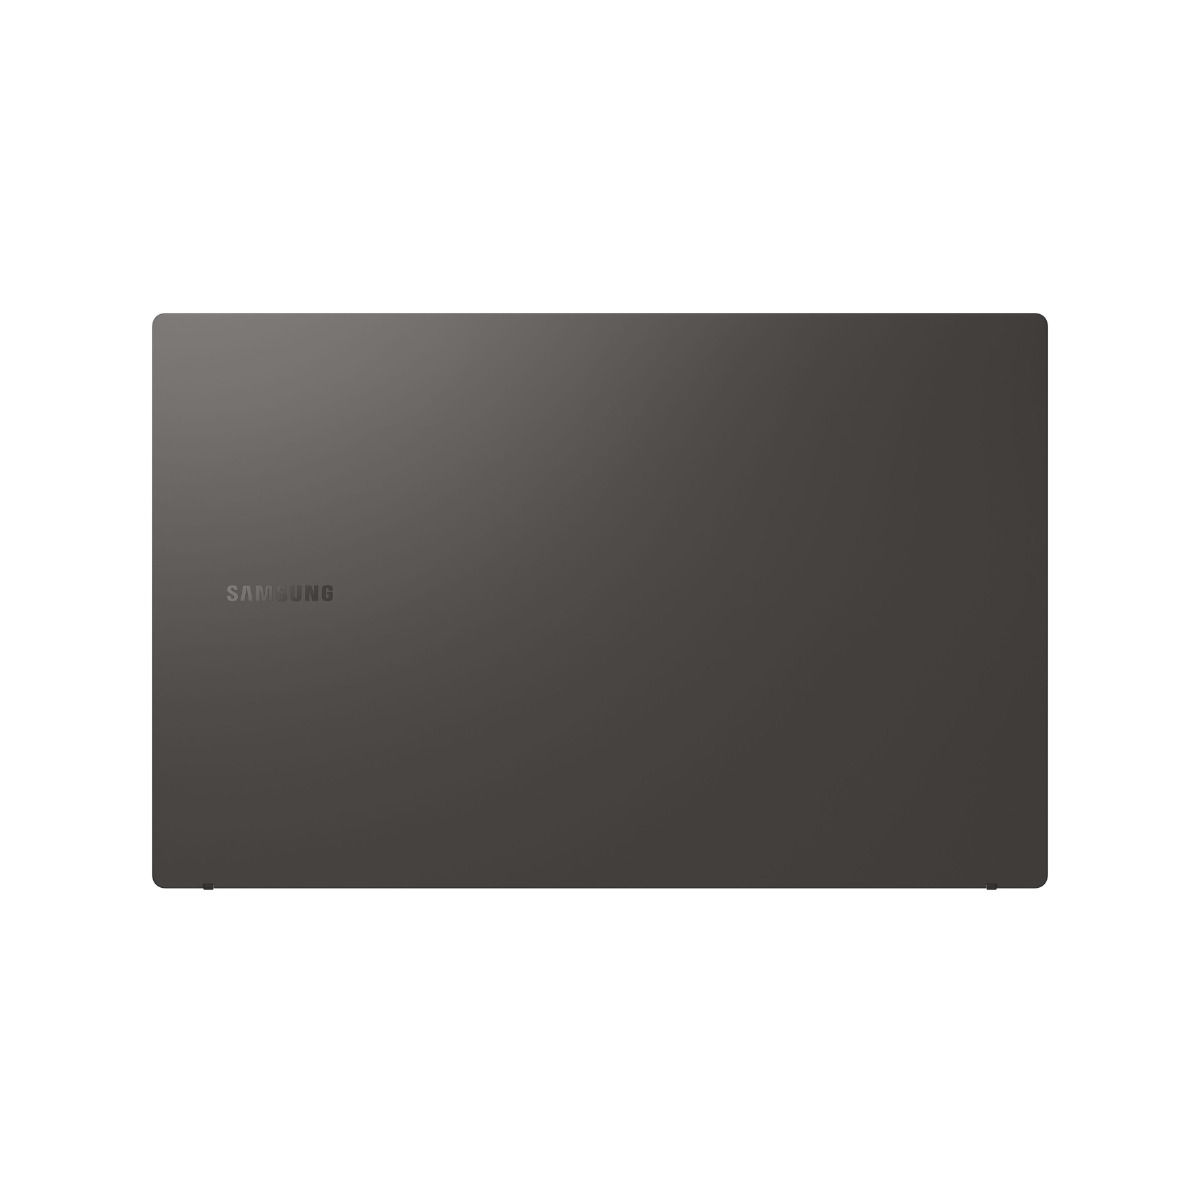 Samsung Galaxy Book3 15.6" Laptop Intel i7 13th Gen 8GB RAM 512GB SSD Grey